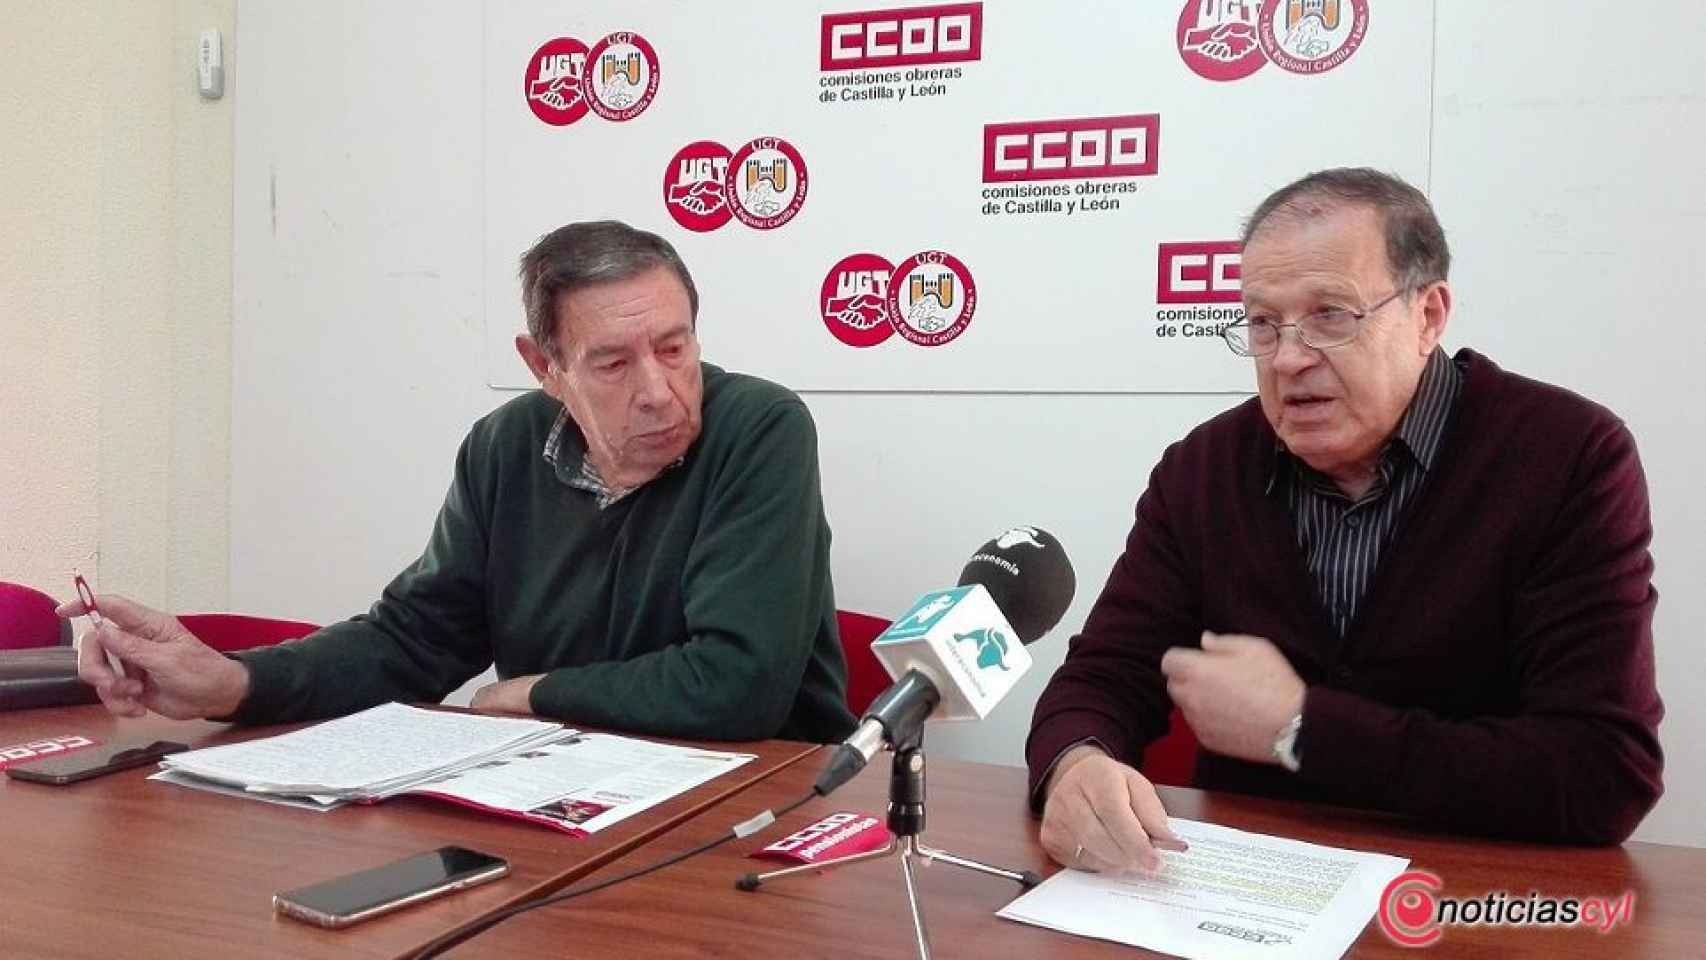 Tomas Martin y Bernabe Martin ccoo pensionistas